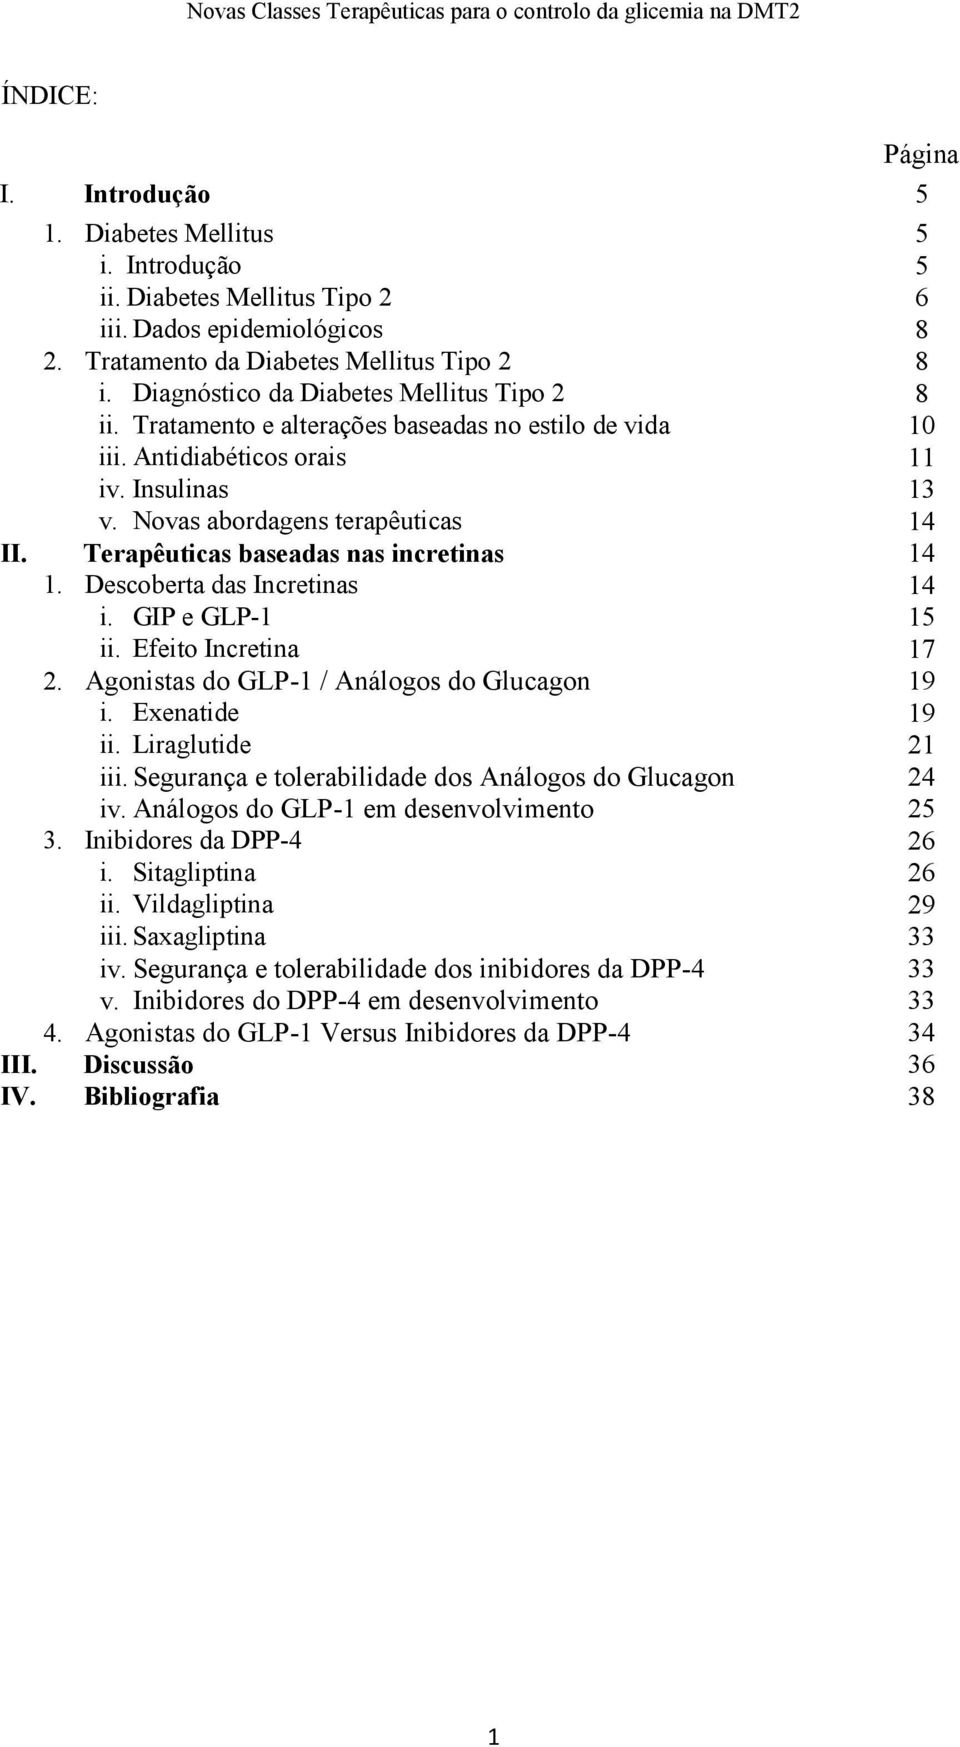 Terapêuticas baseadas nas incretinas 14 1. Descoberta das Incretinas 14 i. GIP e GLP-1 15 ii. Efeito Incretina 17 2. Agonistas do GLP-1 / Análogos do Glucagon 19 i. Exenatide 19 ii.